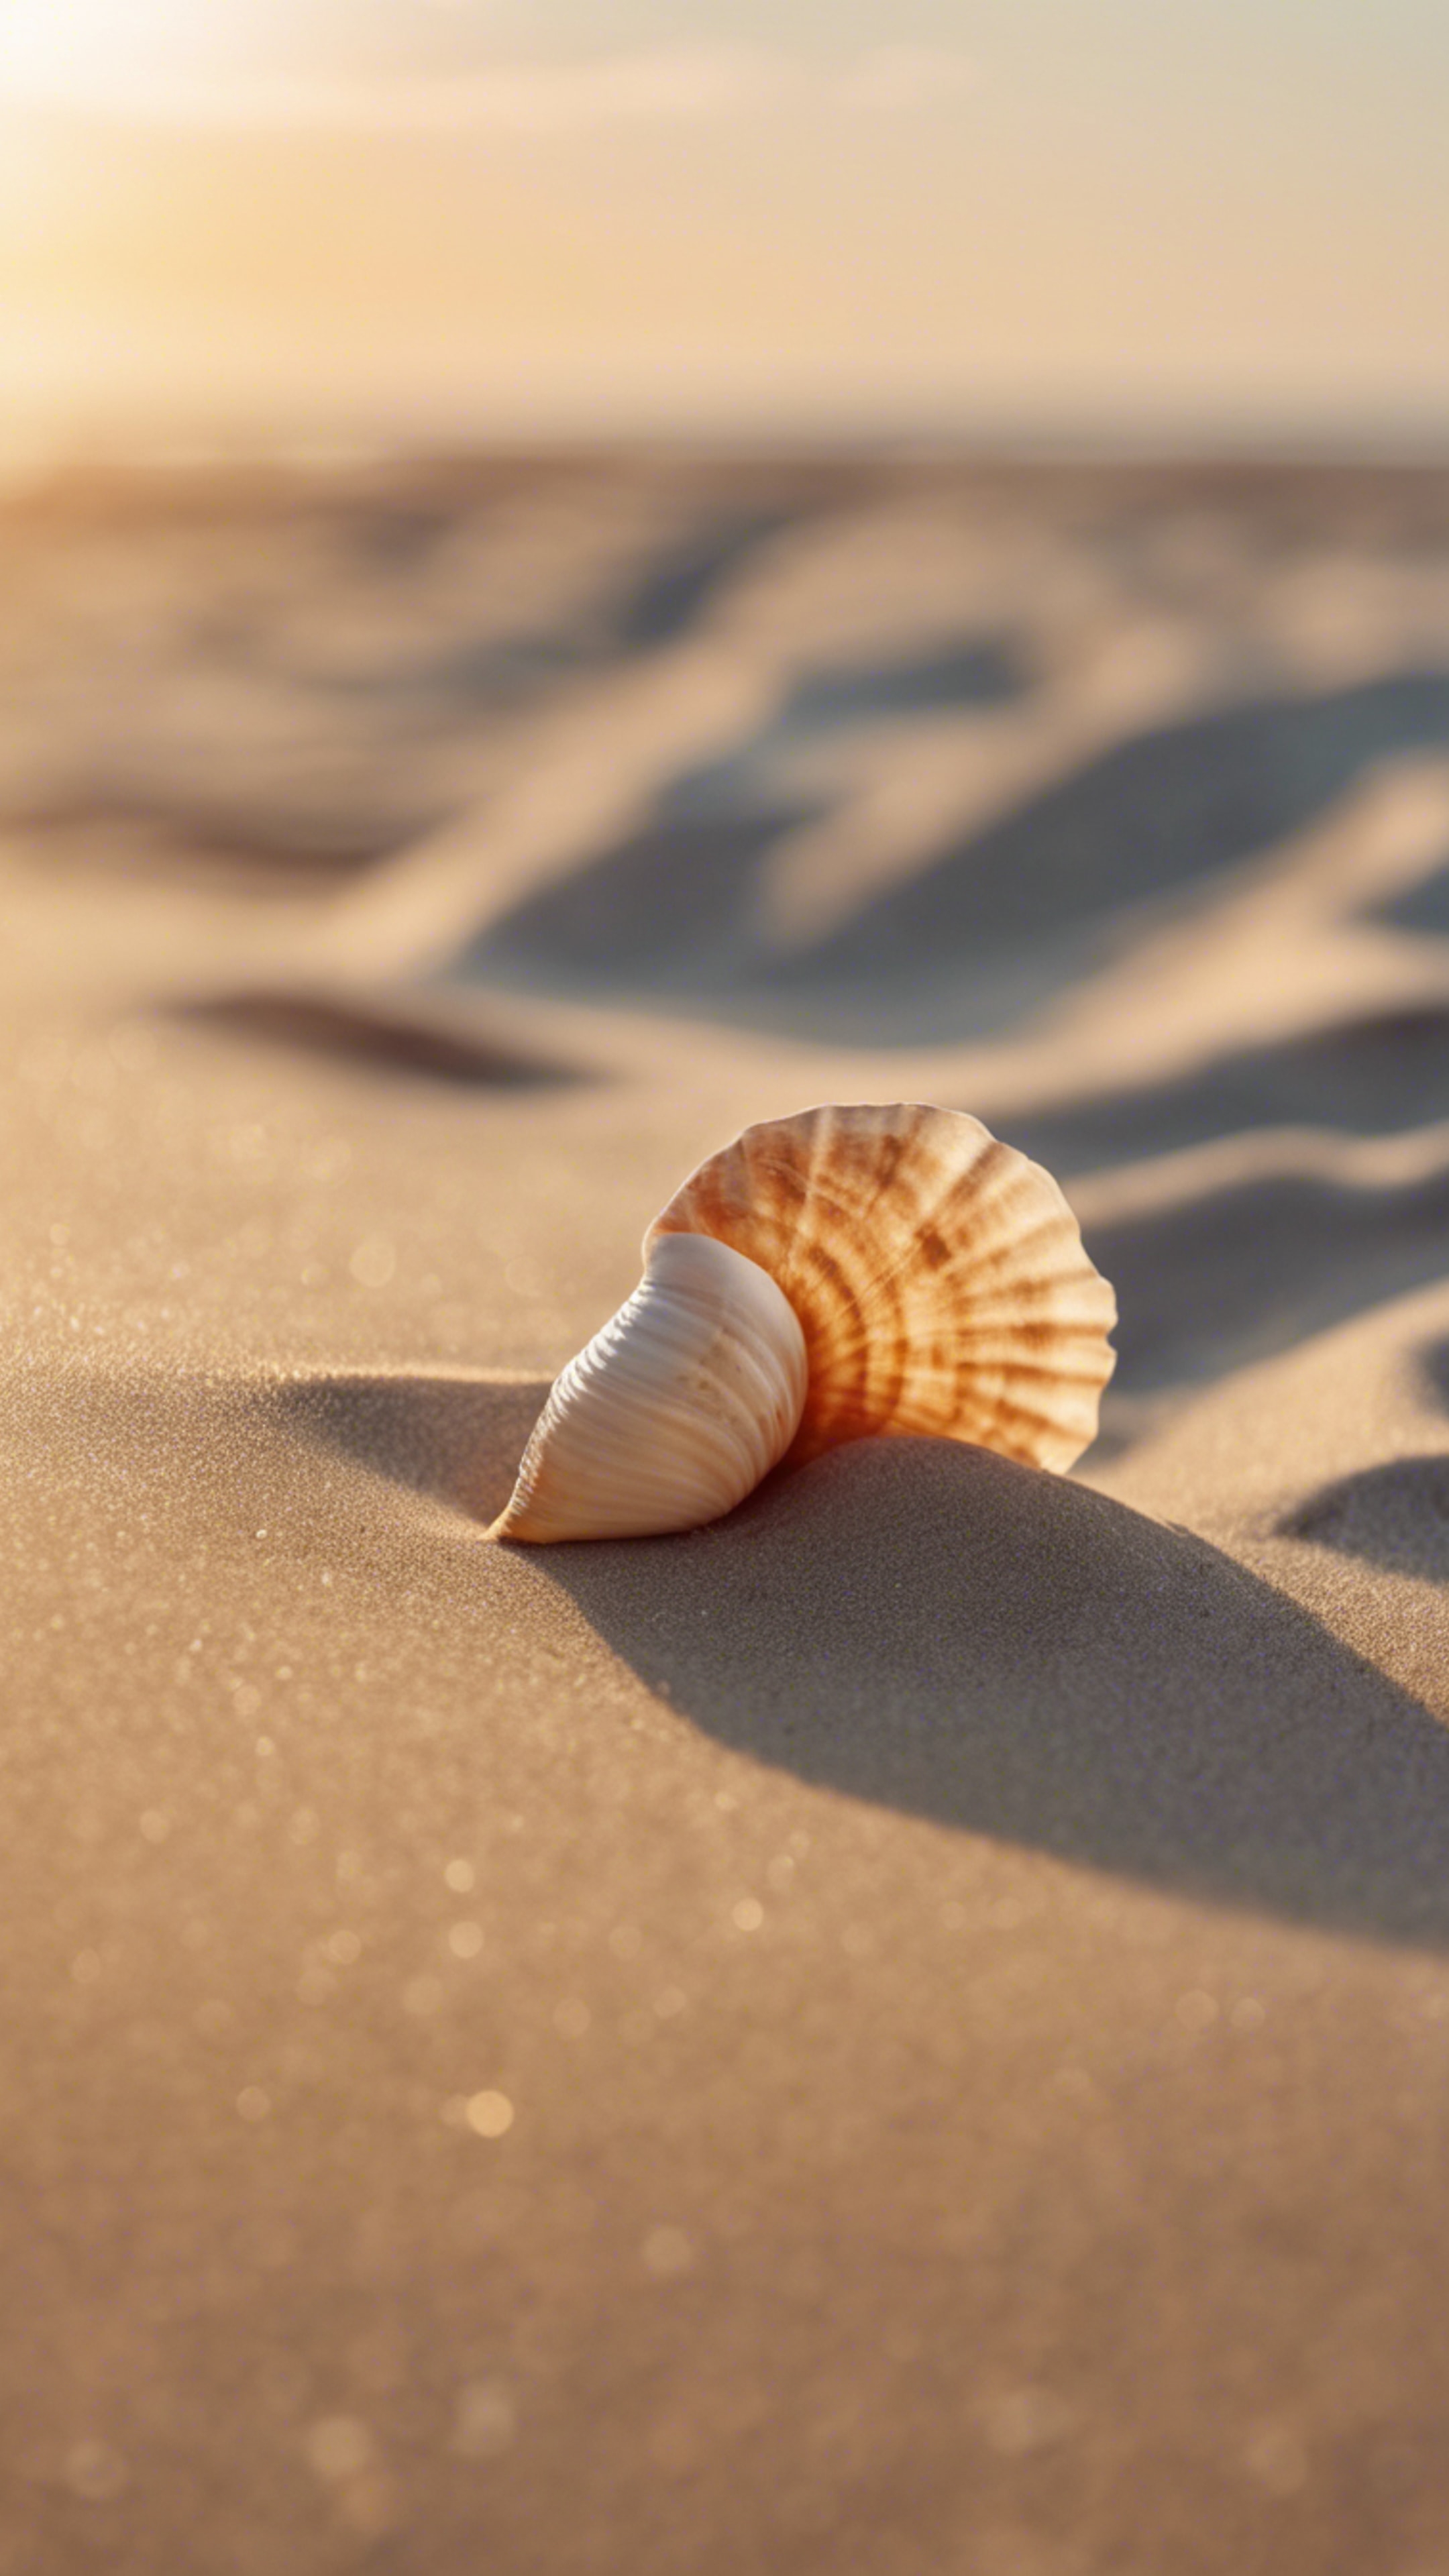 A sandy beach at sunrise, with a lonely seashell on the smooth, cool beige sand. duvar kağıdı[f397365f3b8642f18a02]